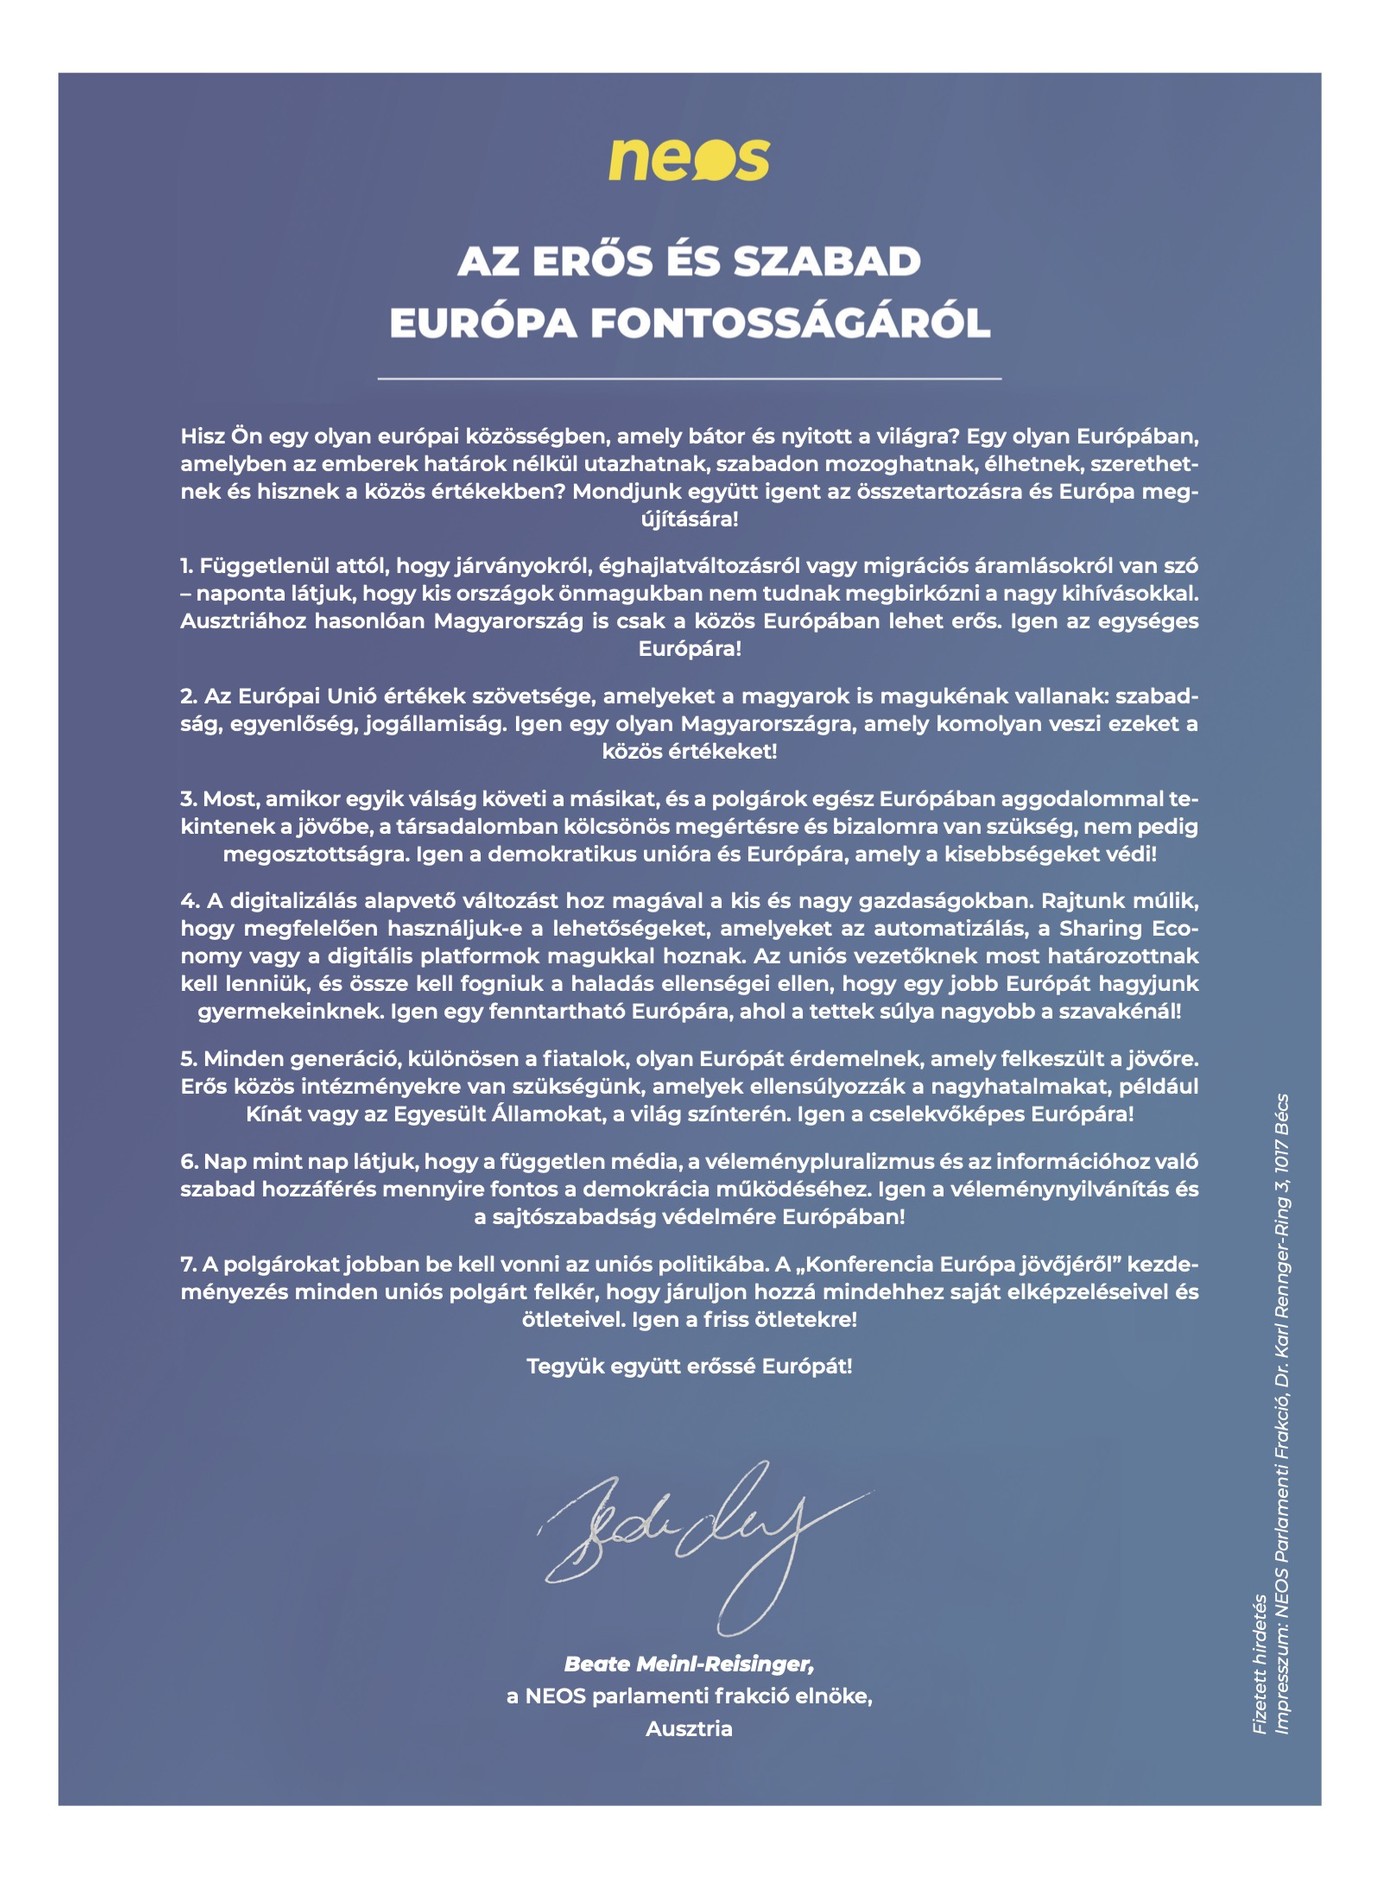 Az osztrák, liberális Neos párt által a Magyar Hangban megjelentetett, egész oldalas, fizetett hirdetés